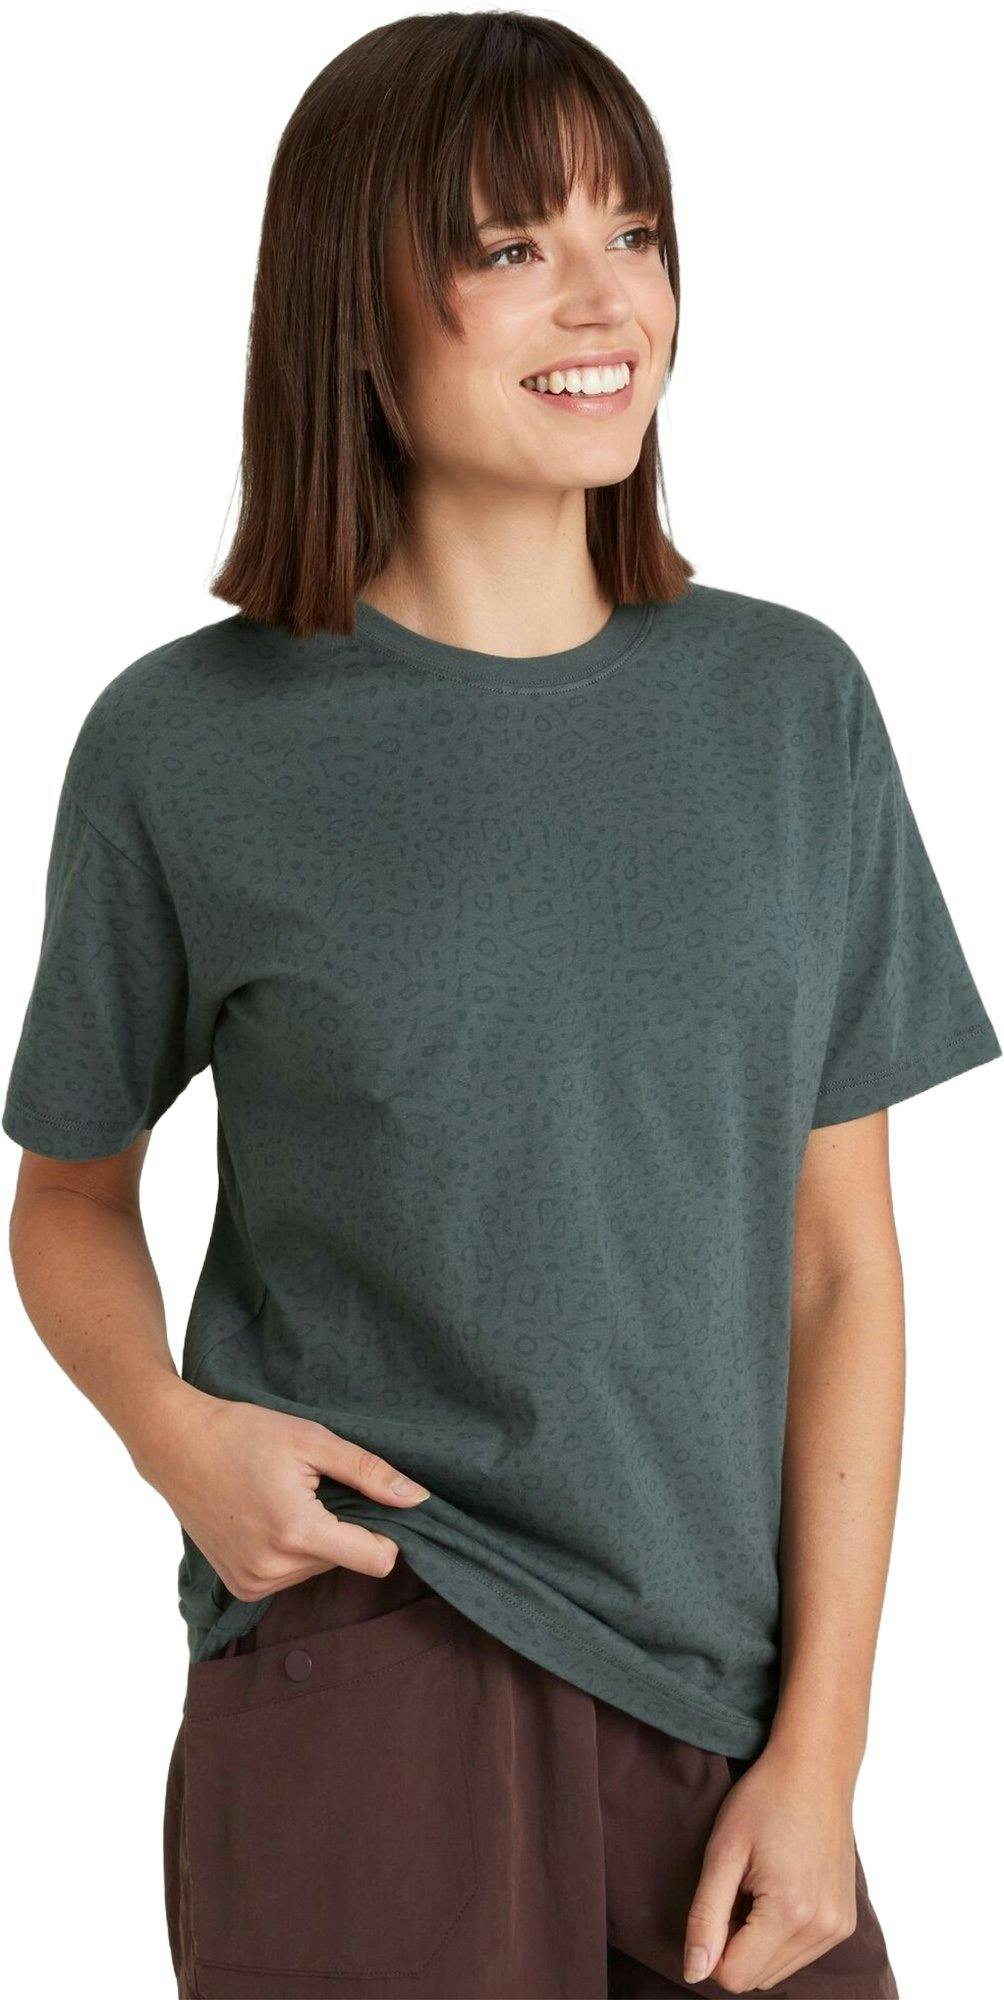 Numéro de l'image de la galerie de produits 2 pour le produit T-shirt à manches courtes Manta - Femme